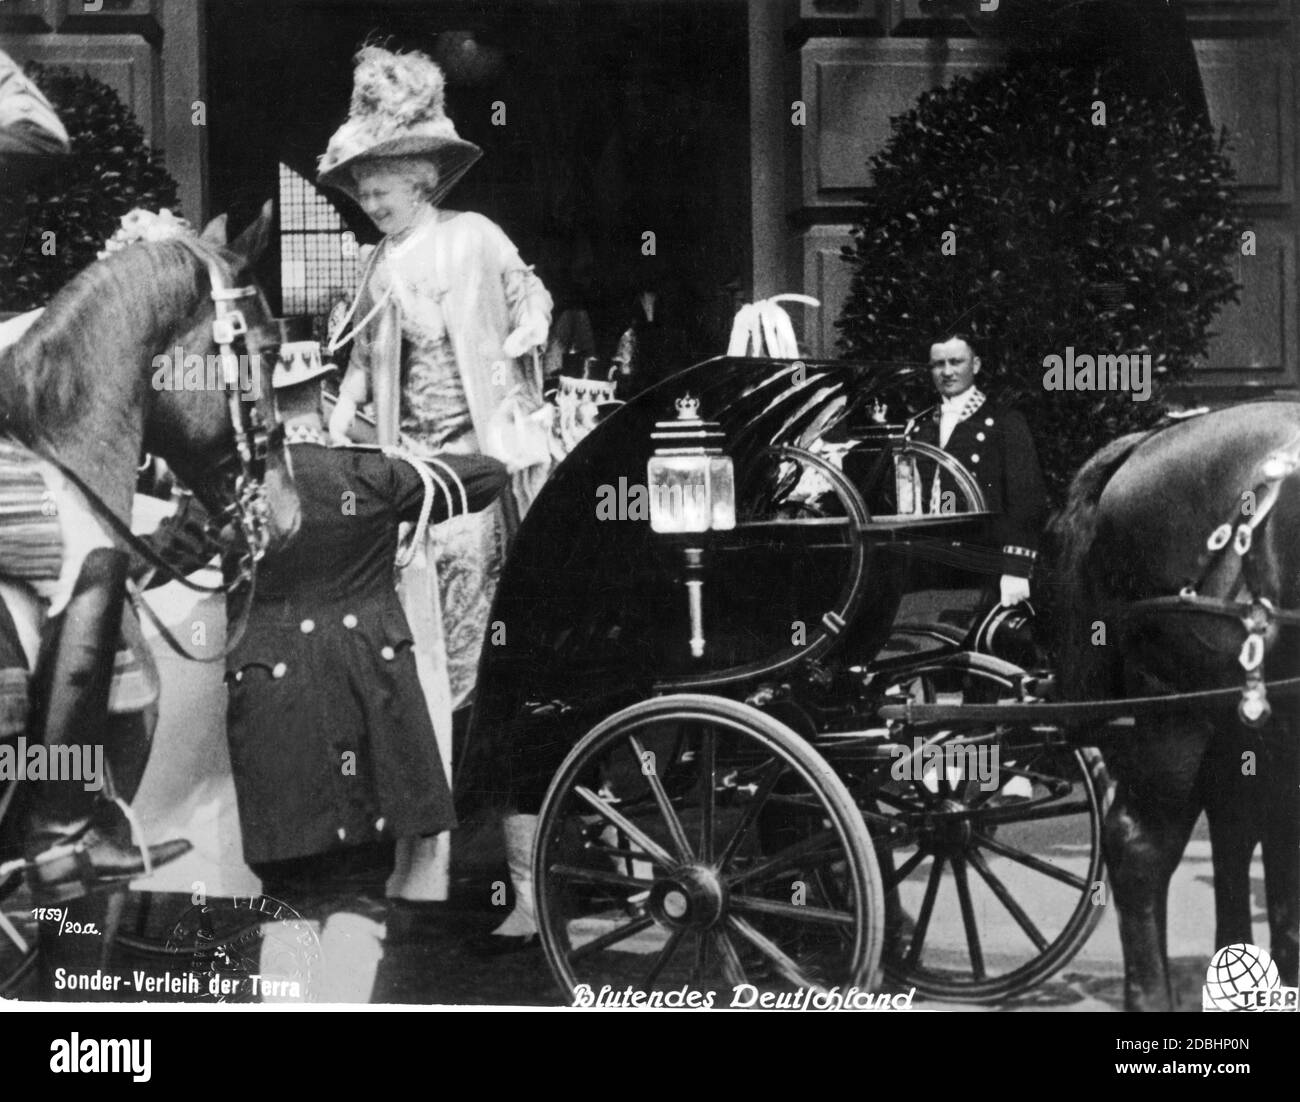 Das britische Königspaar besuchte Berlin am 29. Mai 1913 anlässlich der Hochzeit der Kaisertochter Prinzessin Victoria Louise mit dem Welffürsten Ernst August von Hannover, Herzog von Cumberland. Das Foto zeigt den Abflug der englischen Königin Maria (Maria von Teck, im Wagen sitzend, bedeckt) und der deutschen Kaiserin Augusta Victoria (Mitte, stehend) vom Lehrter Bahnhof. Stockfoto